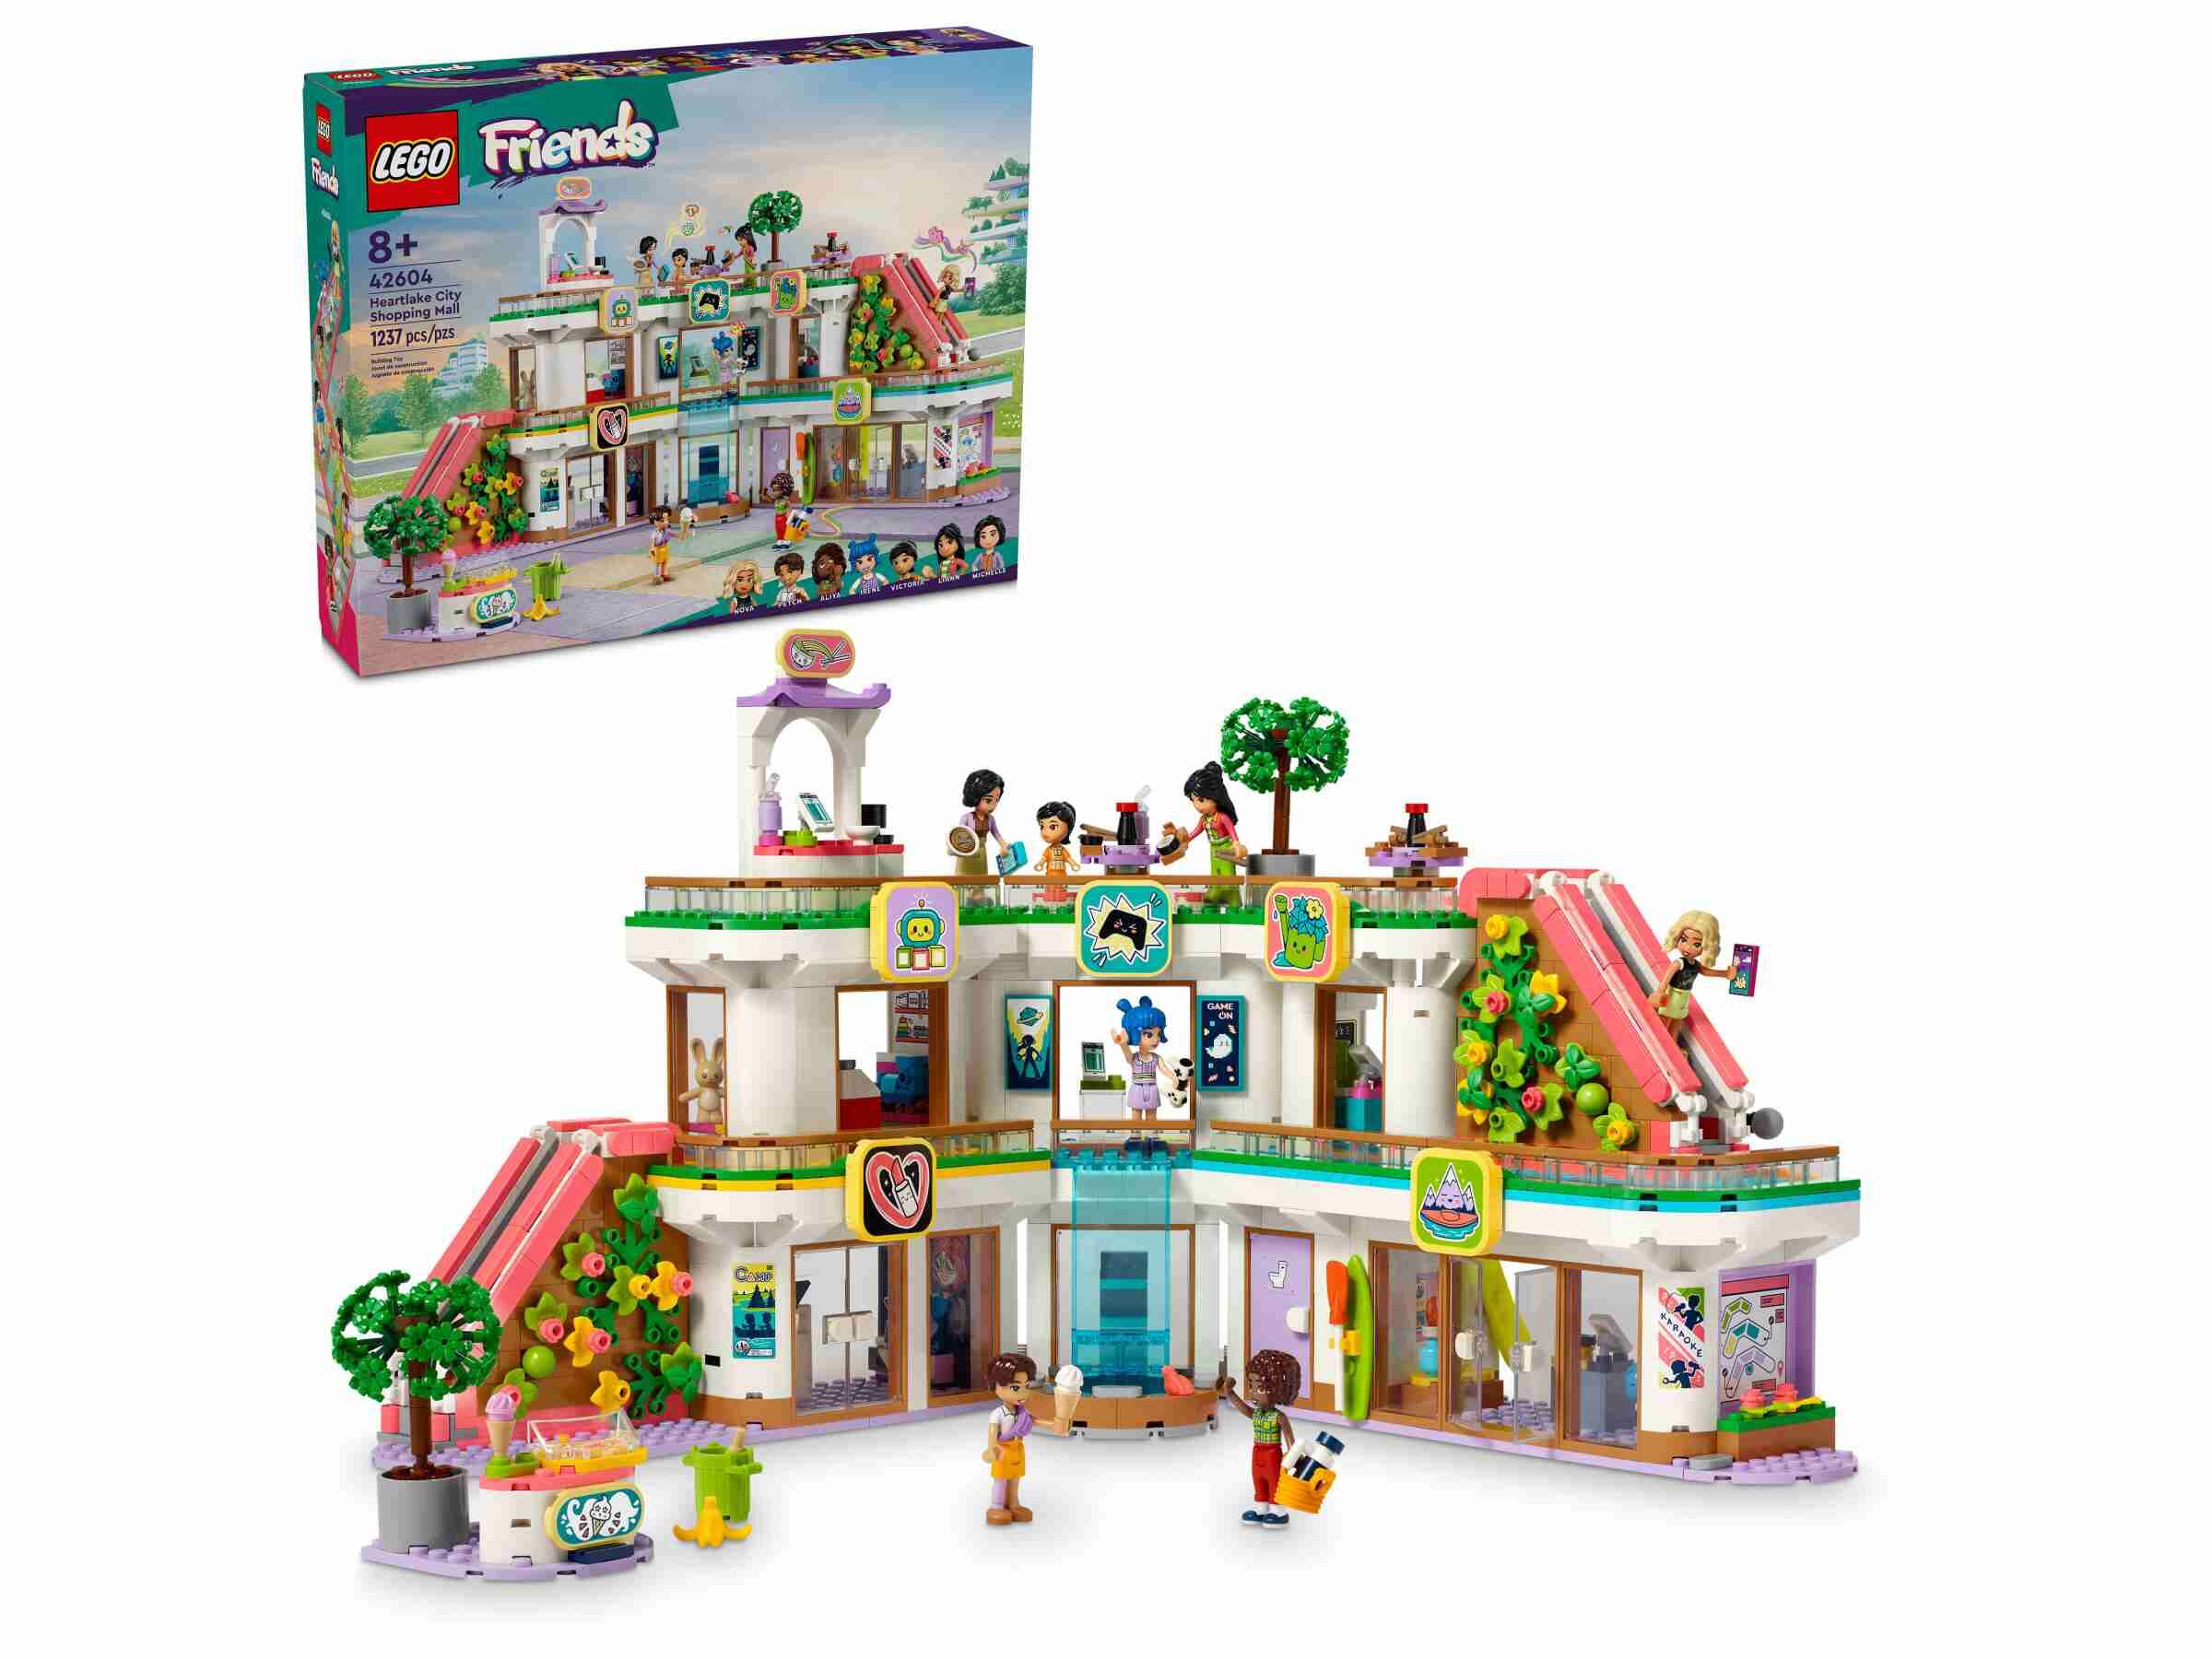 LEGO 42604 Friends Heartlake City Kaufhaus, 7 Spielfiguren, 3 Etagen